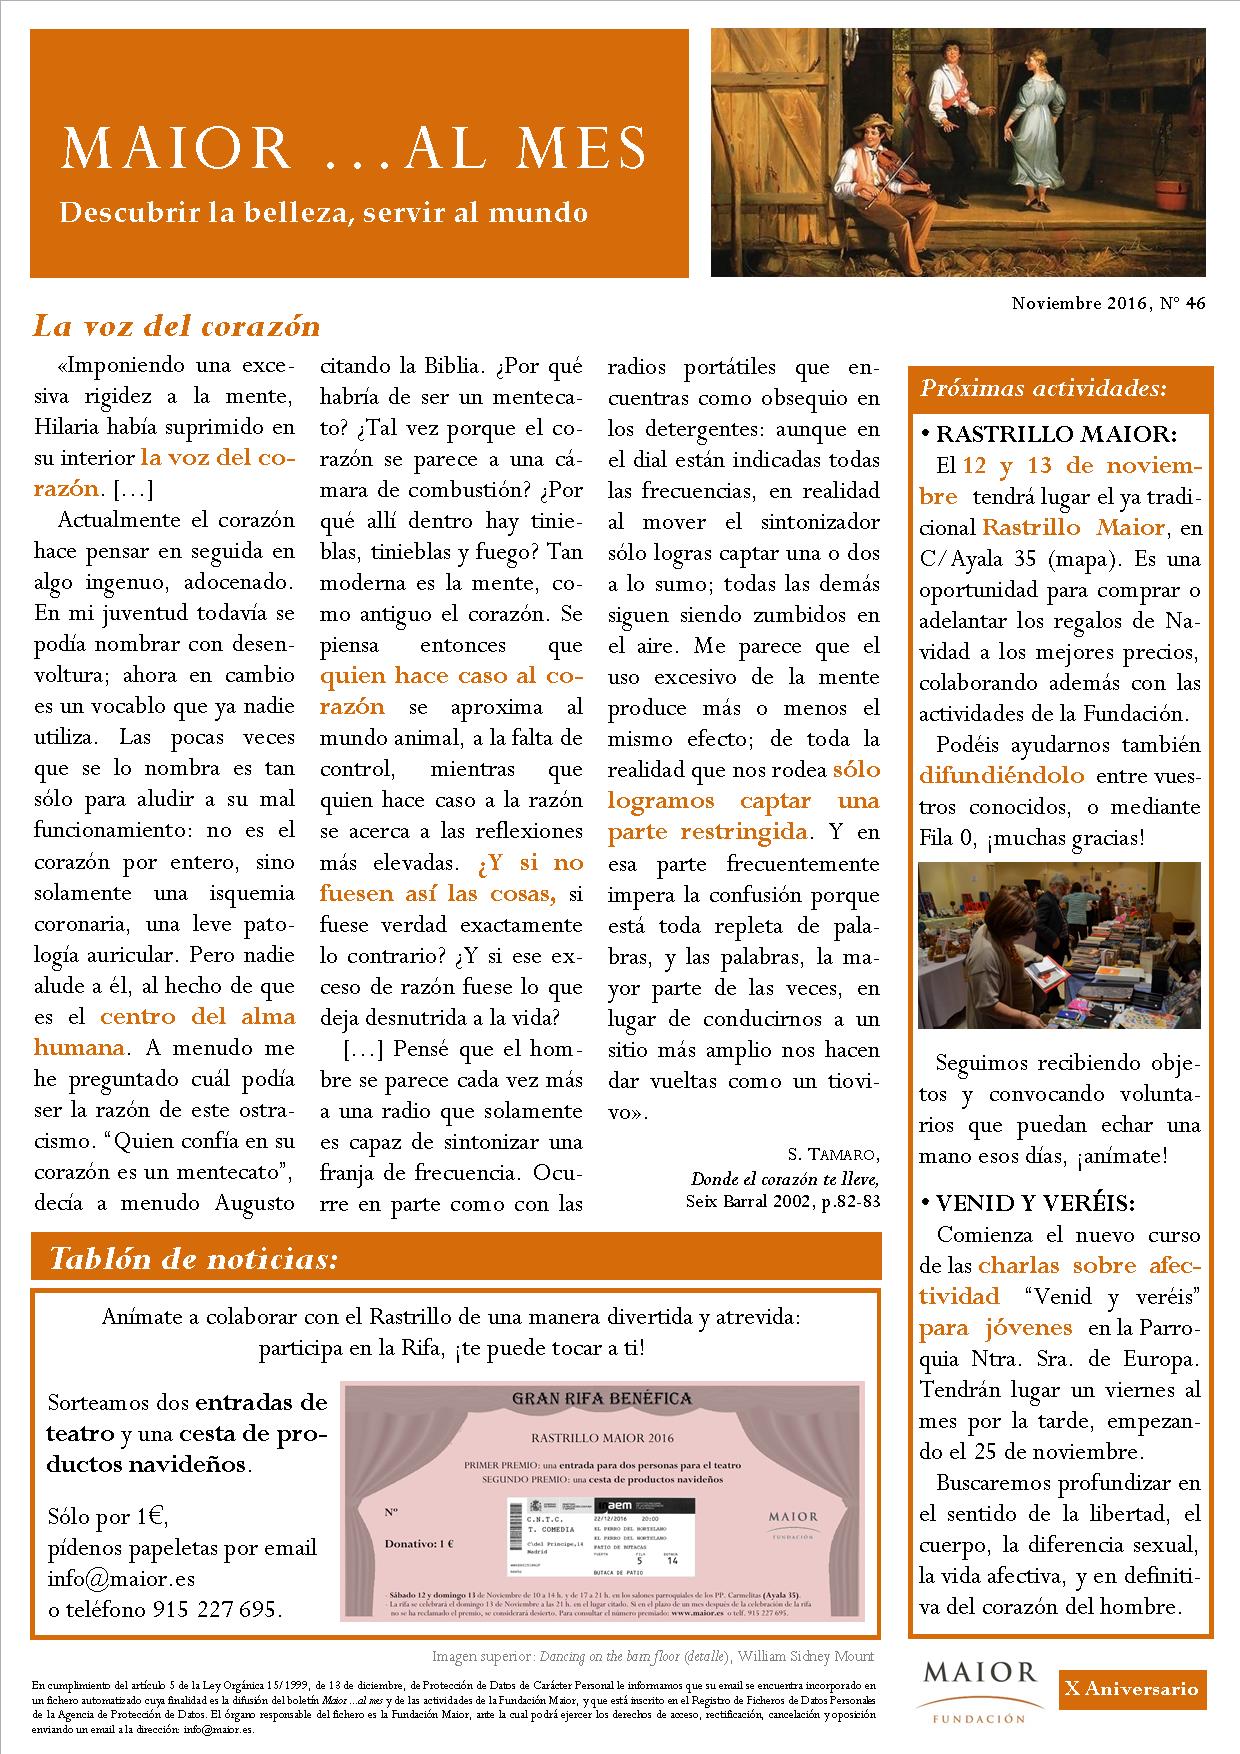 Boletín mensual de noticias y actividades de la Fundación Maior. Edición de noviembre 2016